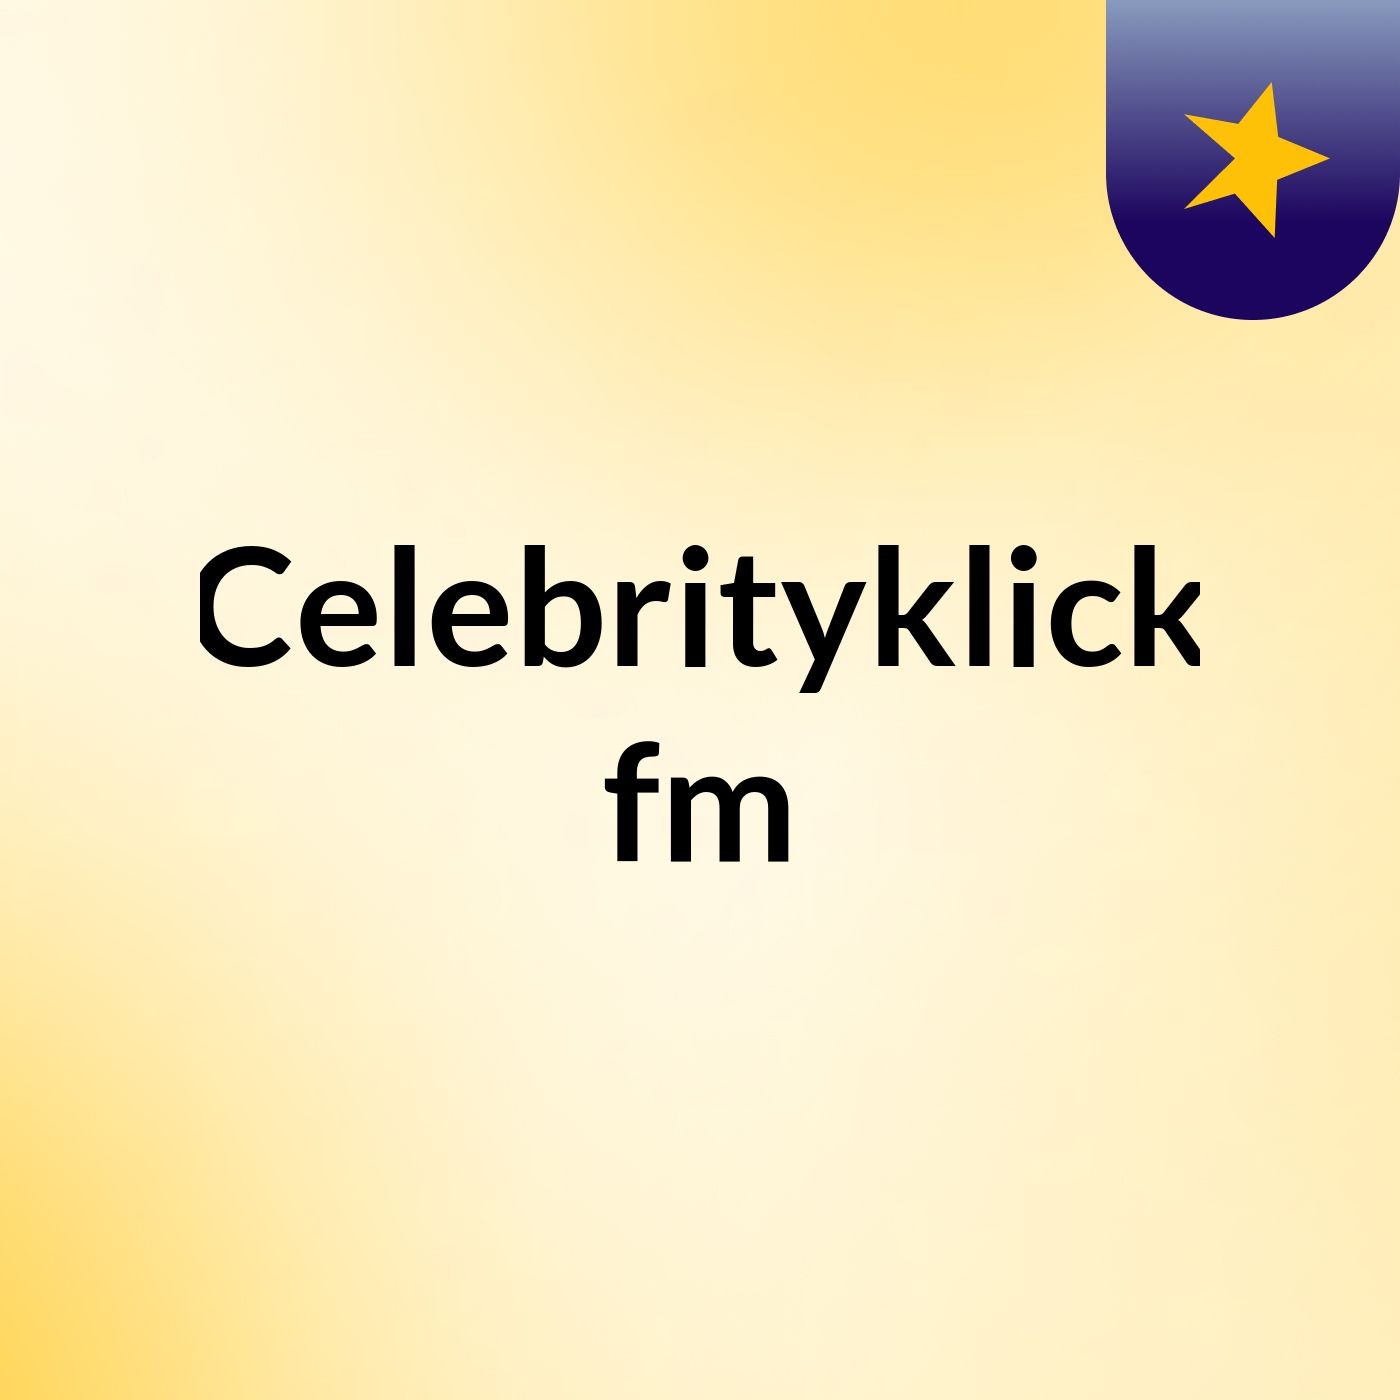 Celebrityklick fm